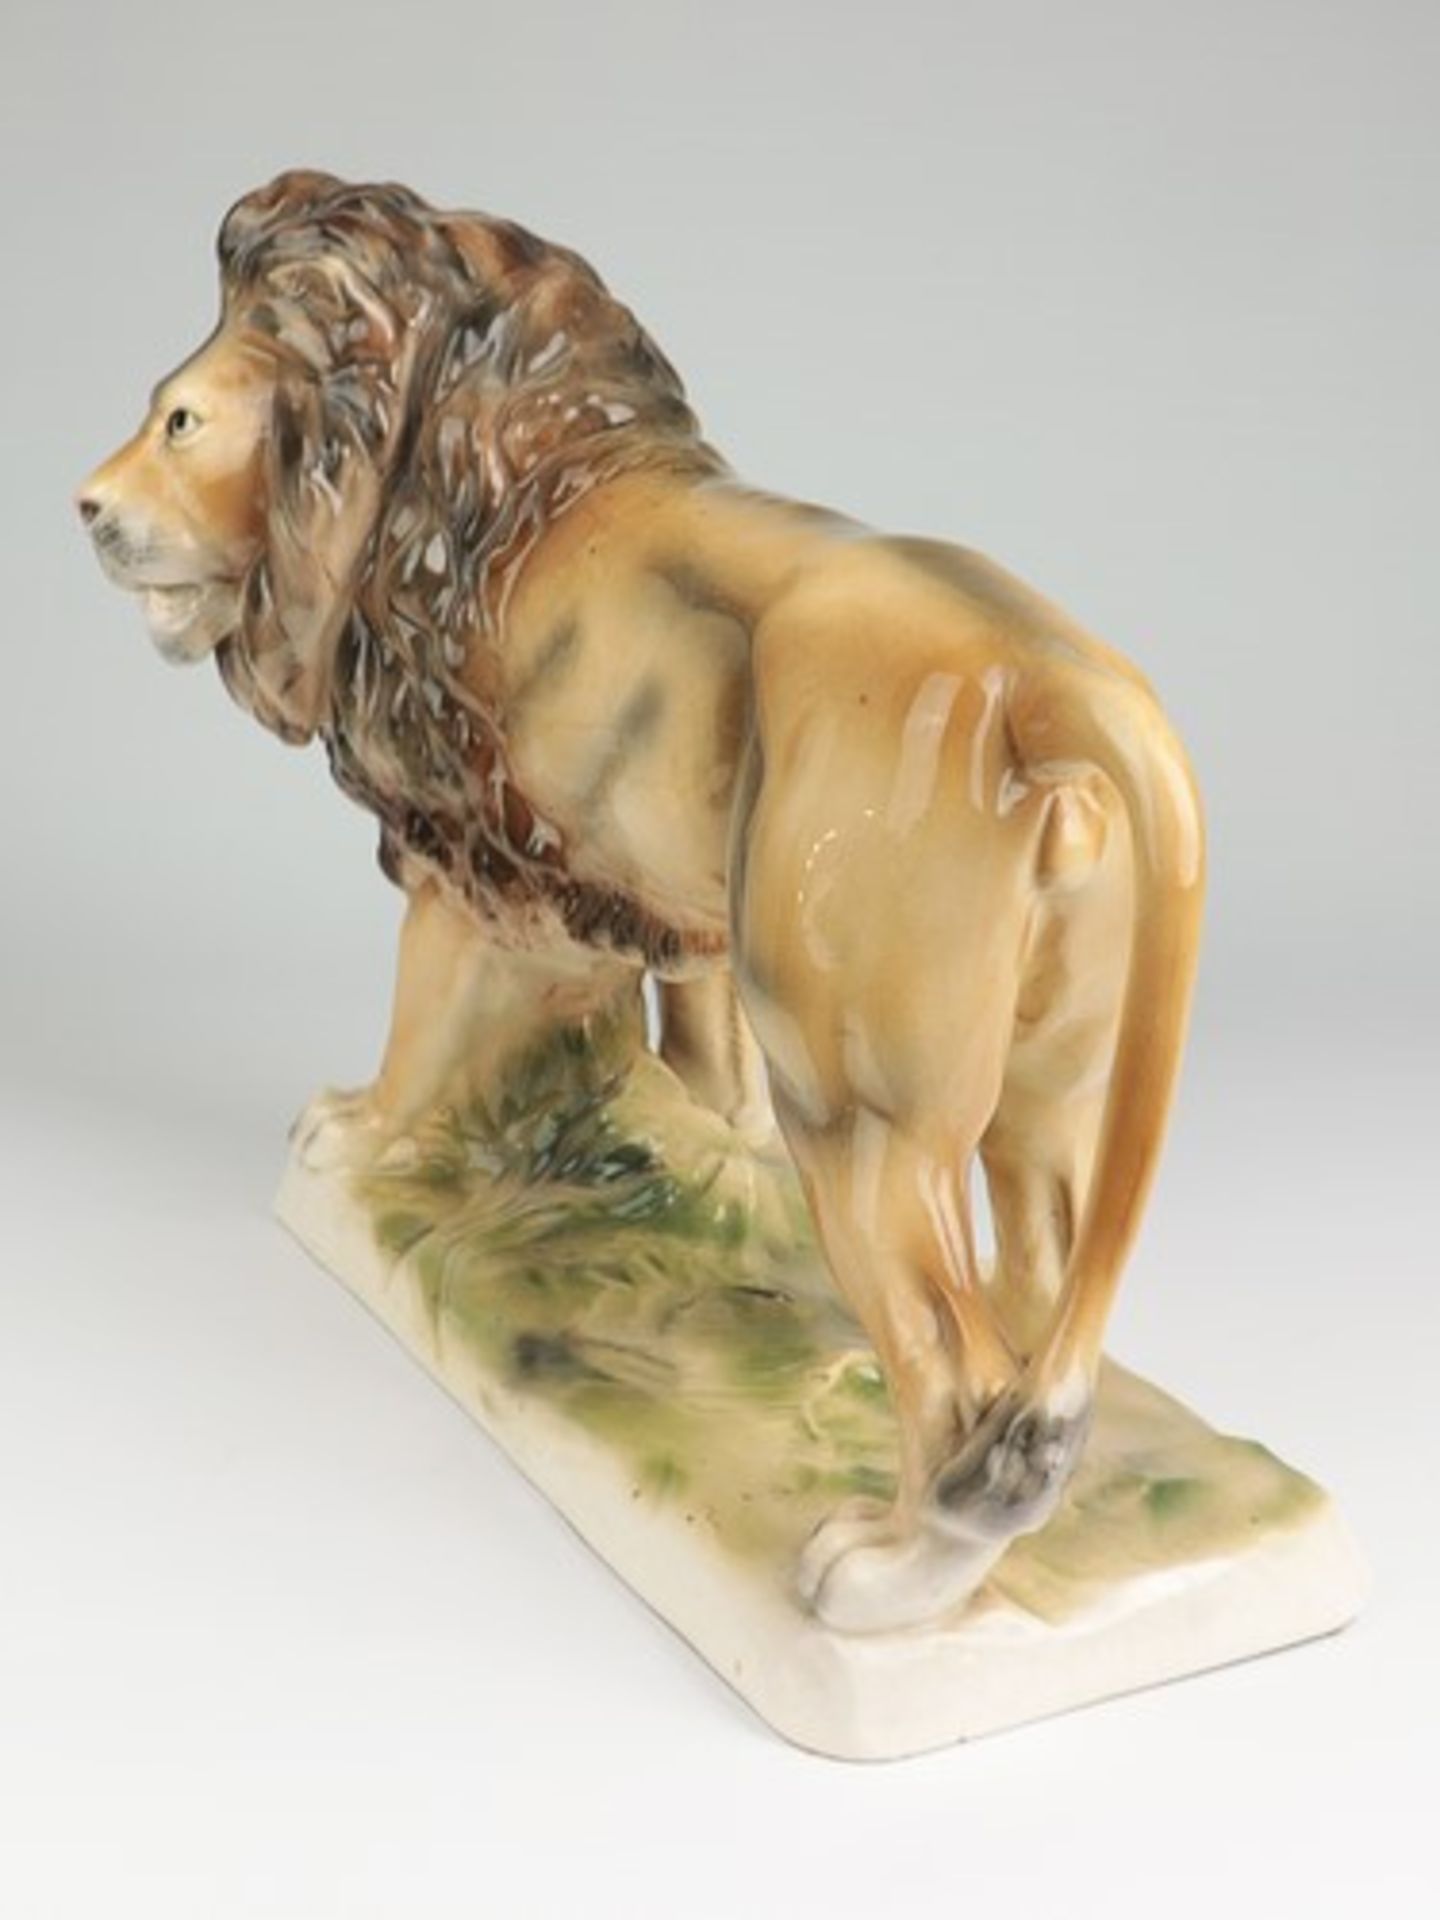 Sitzendorf - FigurStempelmarke, Steingut, vollplast. Figur eines schreitenden Löwen auf - Image 3 of 7